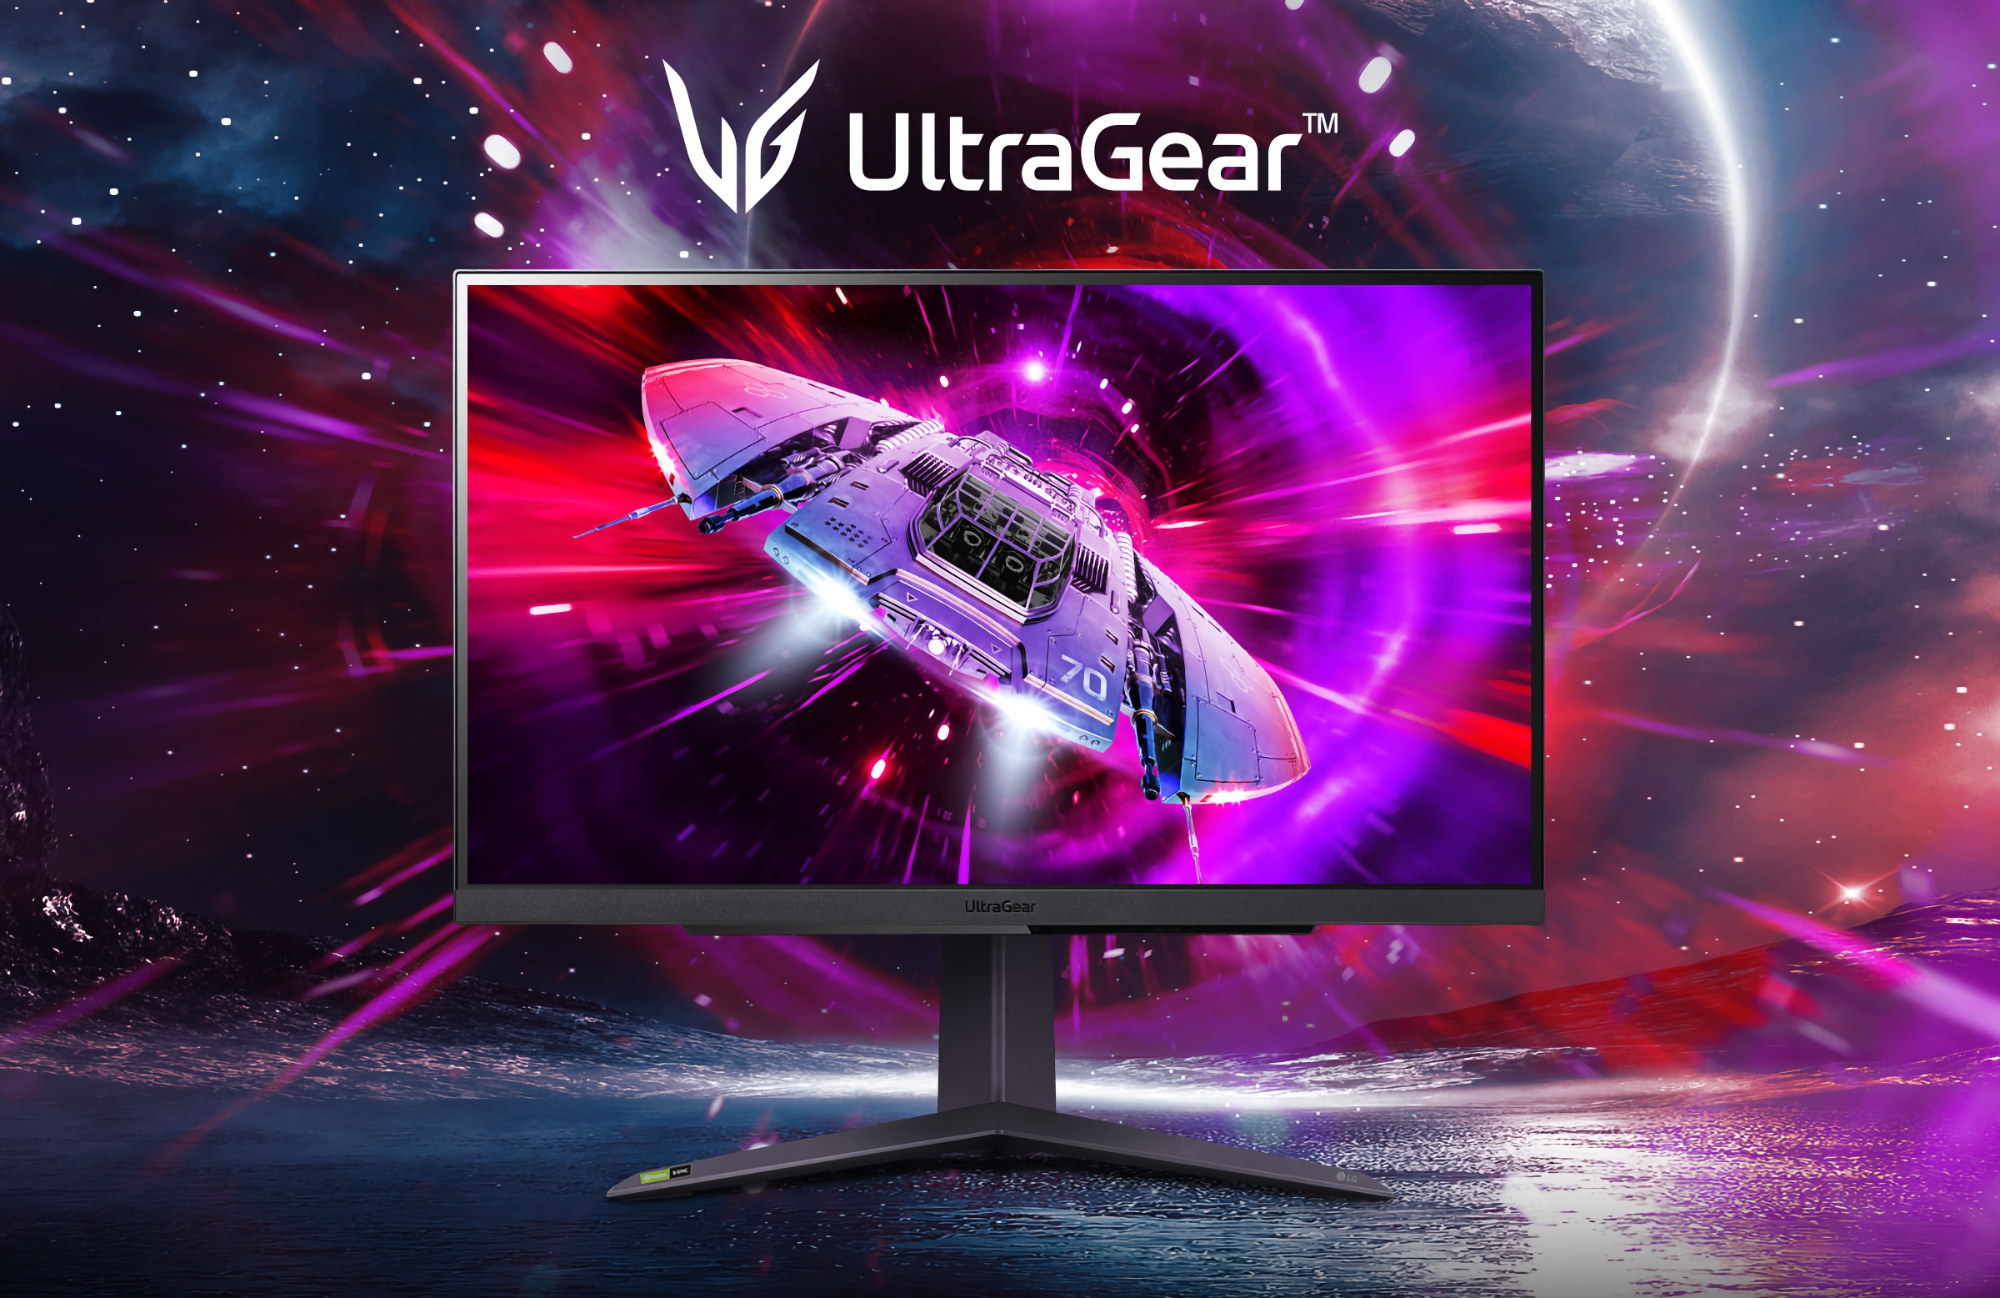 LG представила UltraGear 27GR75Q: ігровий монітор з роздільною здатністю 2K, частотою оновлення 165 Гц та підтримкою AMD FreeSync Premium